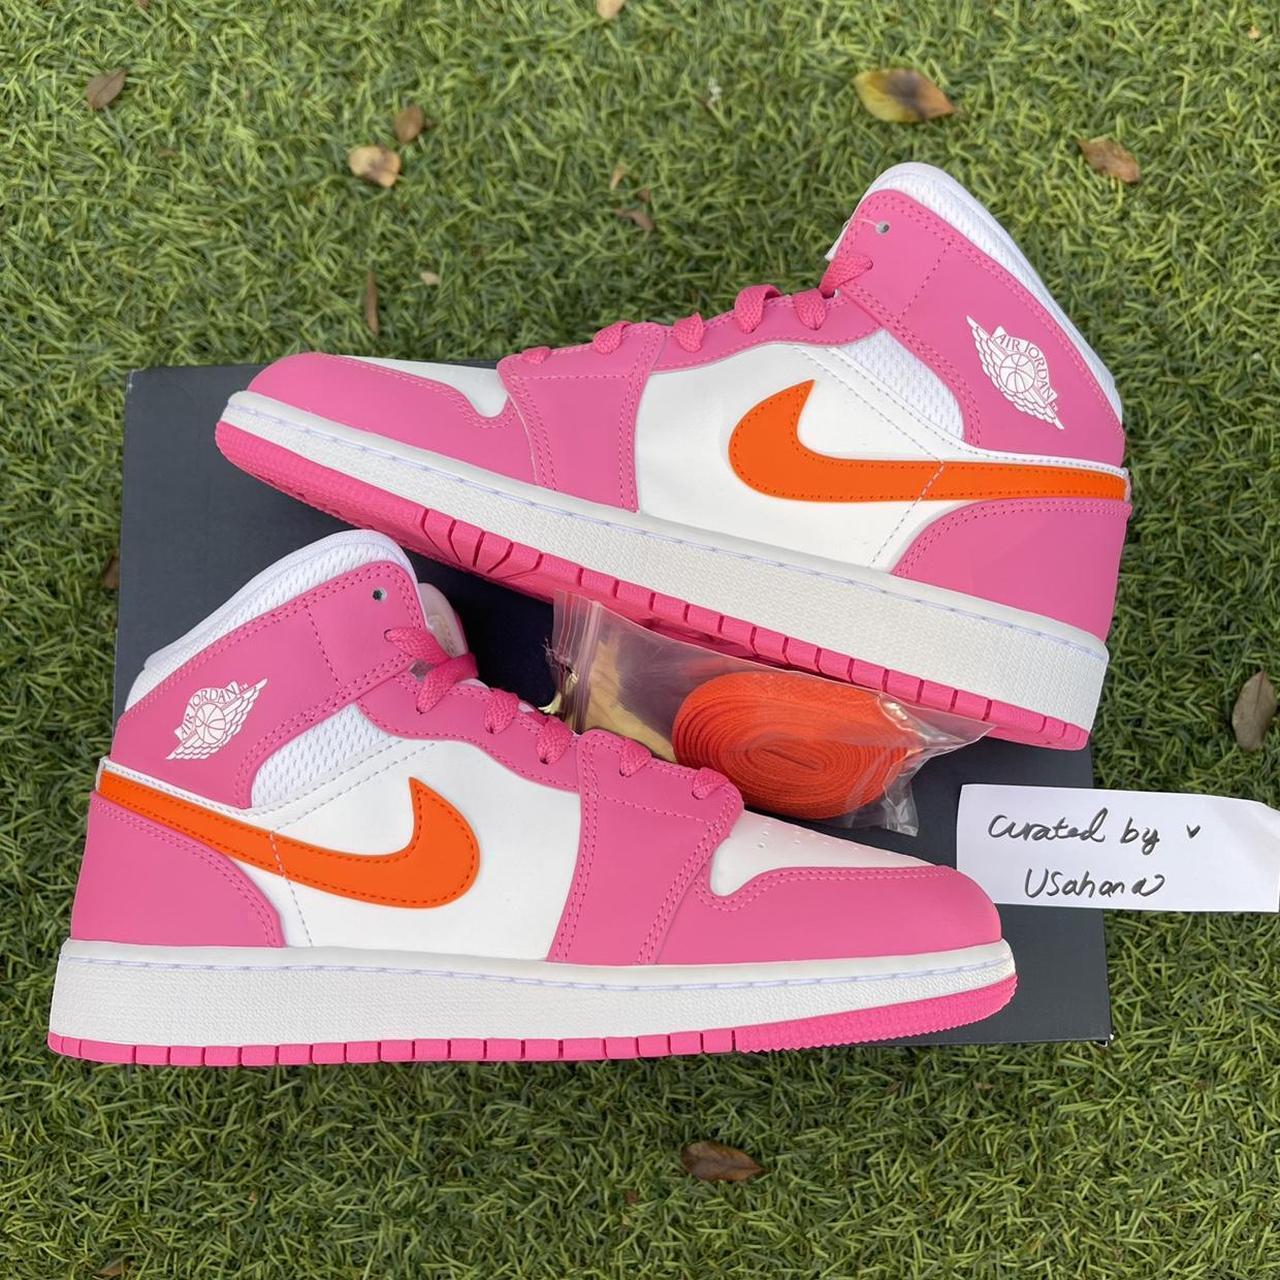 Nike Air Jordan 1 Mid Gs Pink Orange Shoes Brand Depop 6355